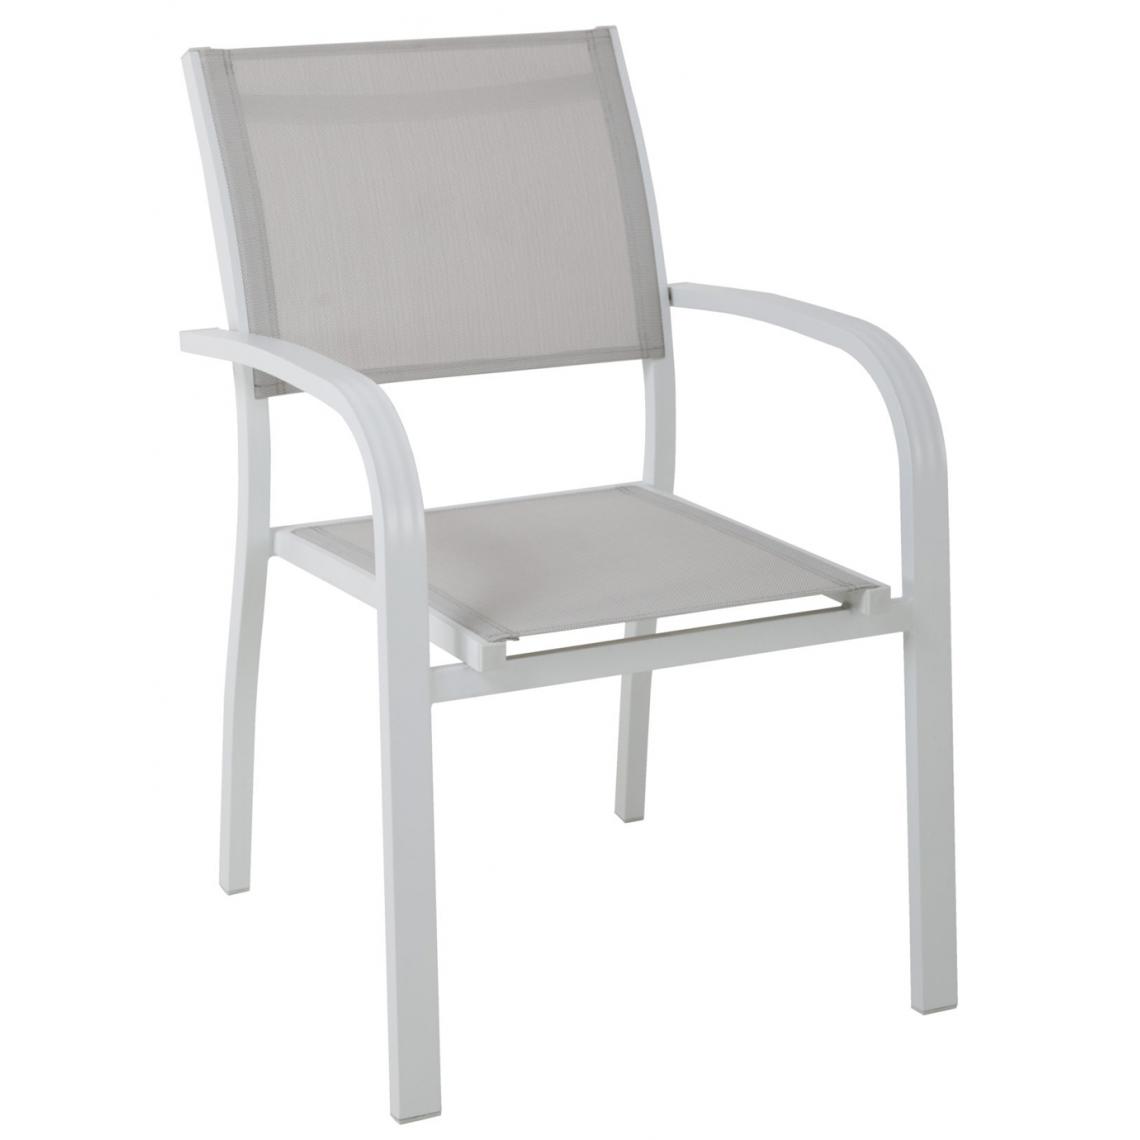 Pegane - Lot de 4 Chaises en aluminium et textilène coloris gris clair - 56 x 86 x 58 cm -PEGANE- - Chaises de jardin